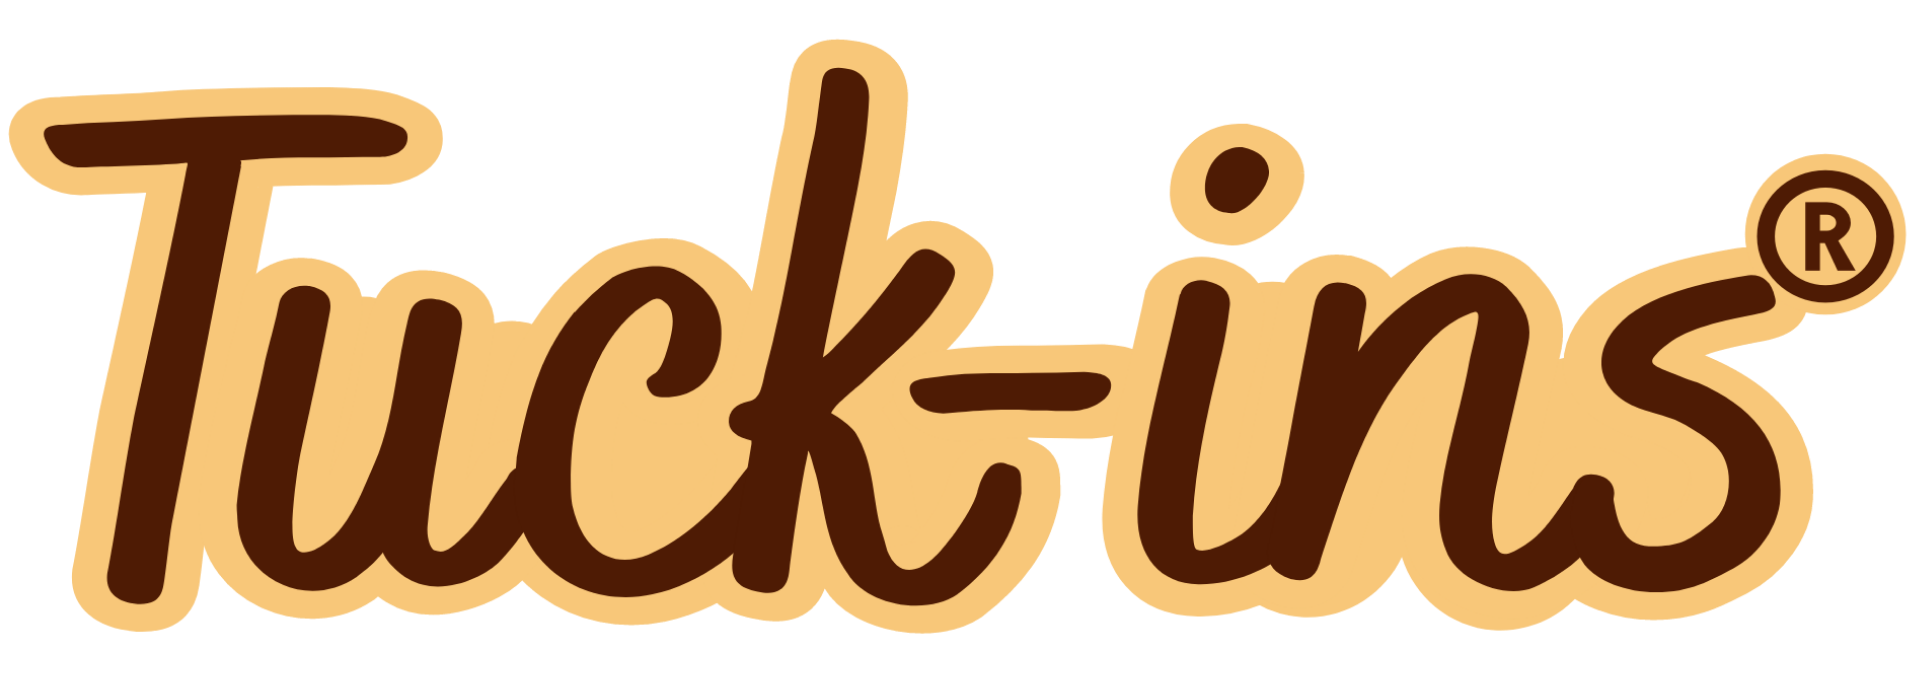 Tuck-ins Logo No Padding